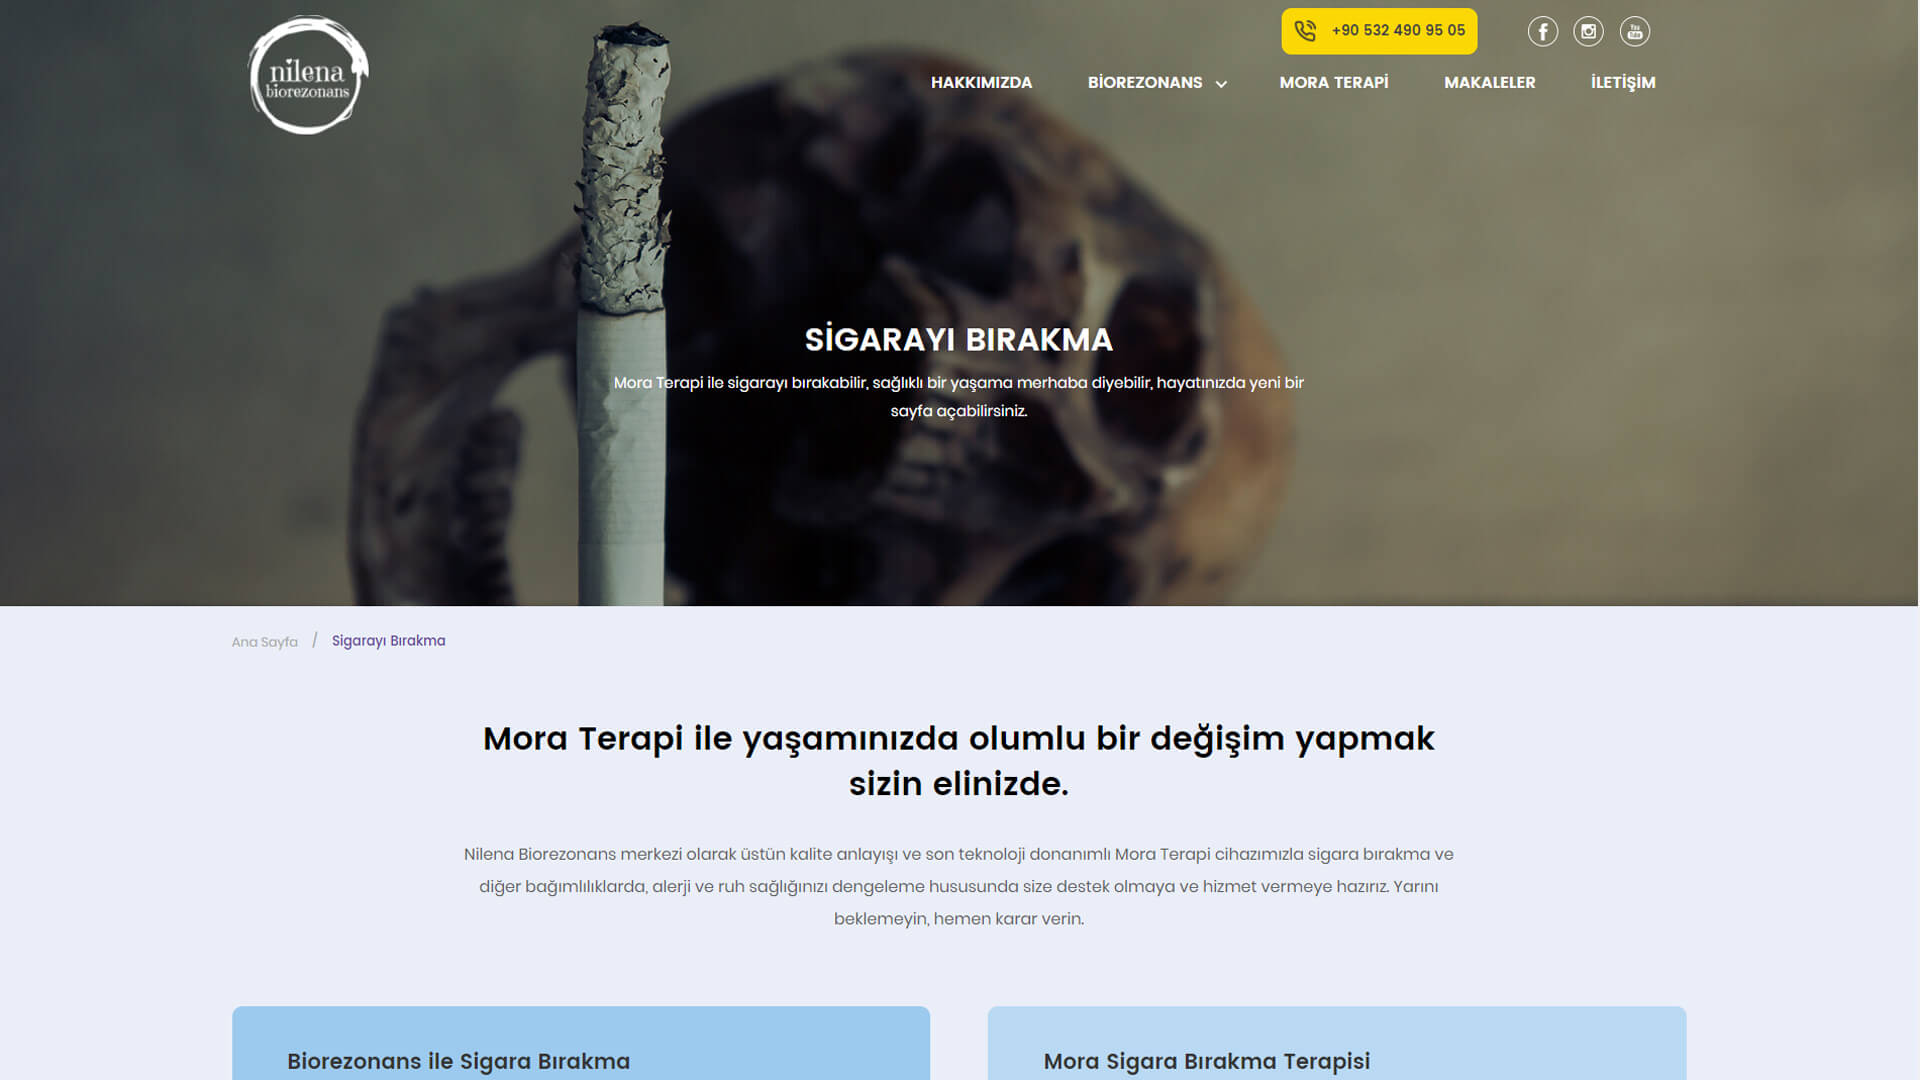 Nilena Biorezonans Web Sitesi Sigara Bırakma Sayfası